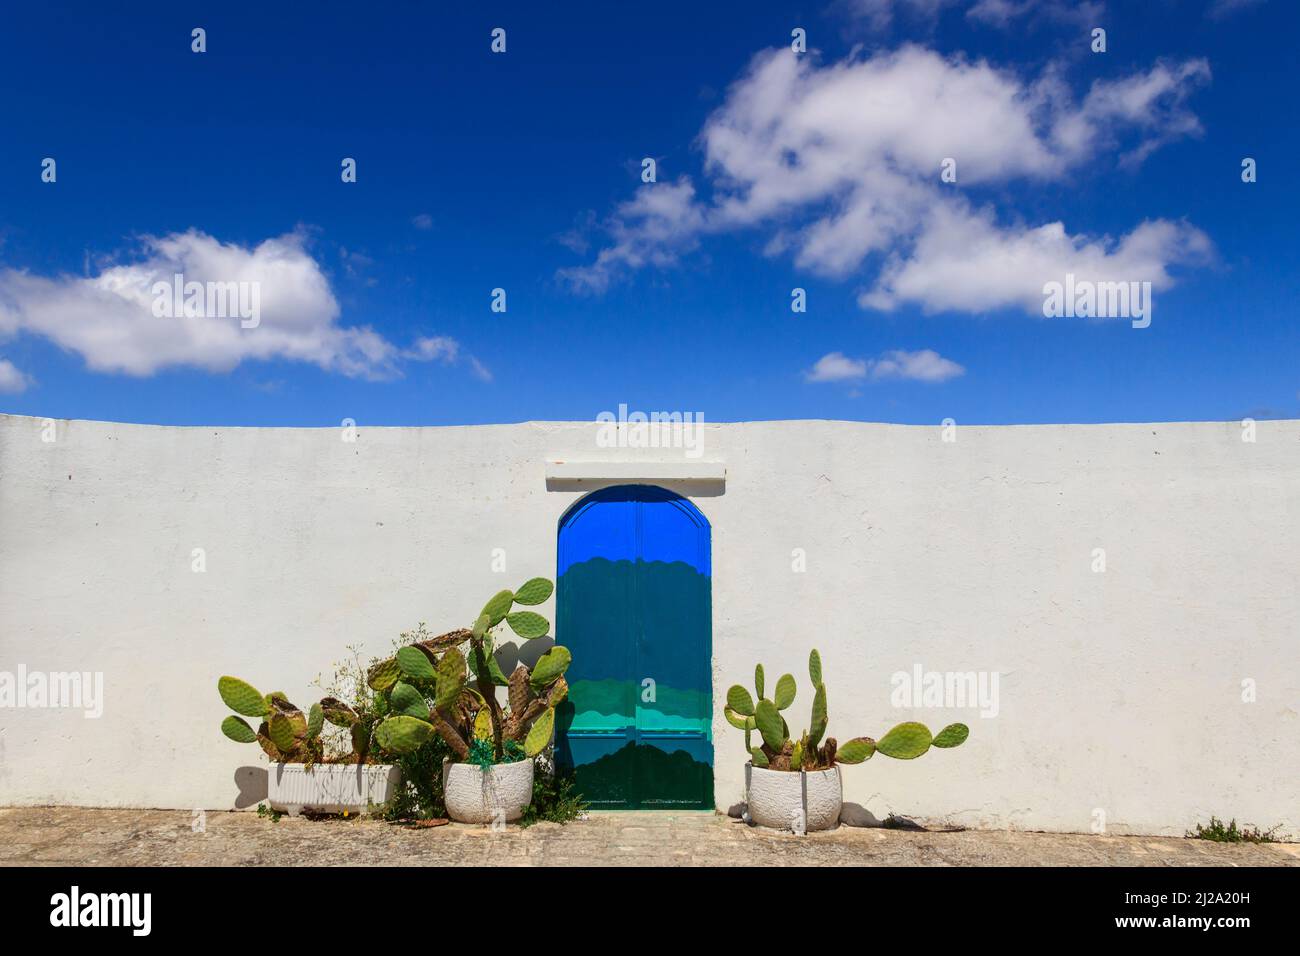 Ciel bleu avec nuages, porte bleue avec poire piqueuse et mur blanc traditionnel dans la ville d'Ostuni à Apulia, Italie. Banque D'Images